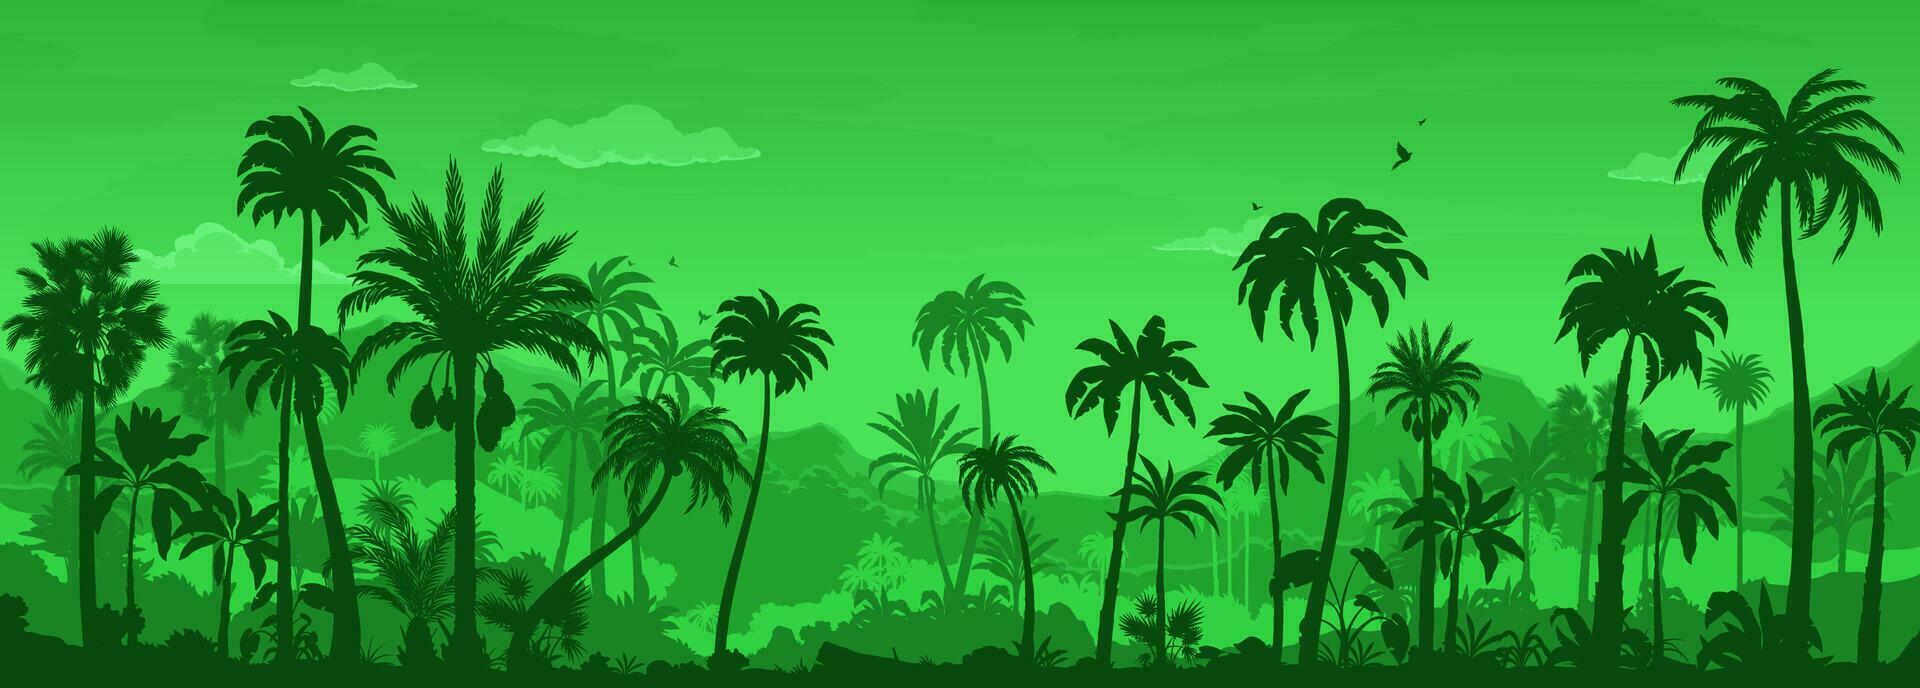 jungle forest landscape, rainforest silhouette vector